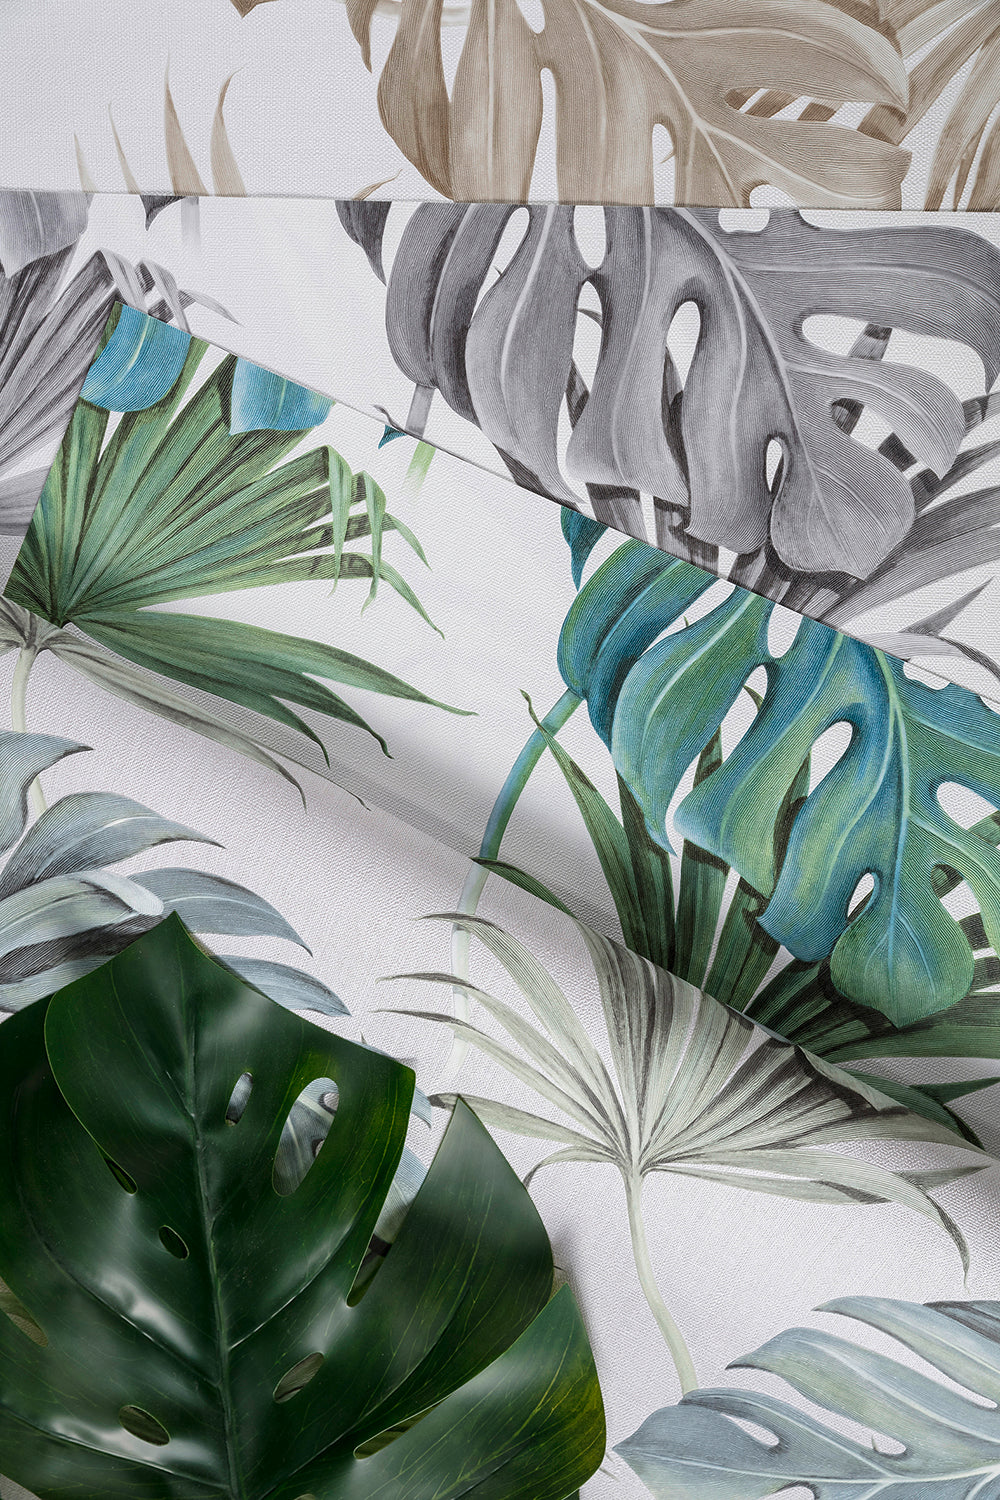 Schoner Wohnen New Spirit - Palm Leaves botanical wallpaper Marburg    